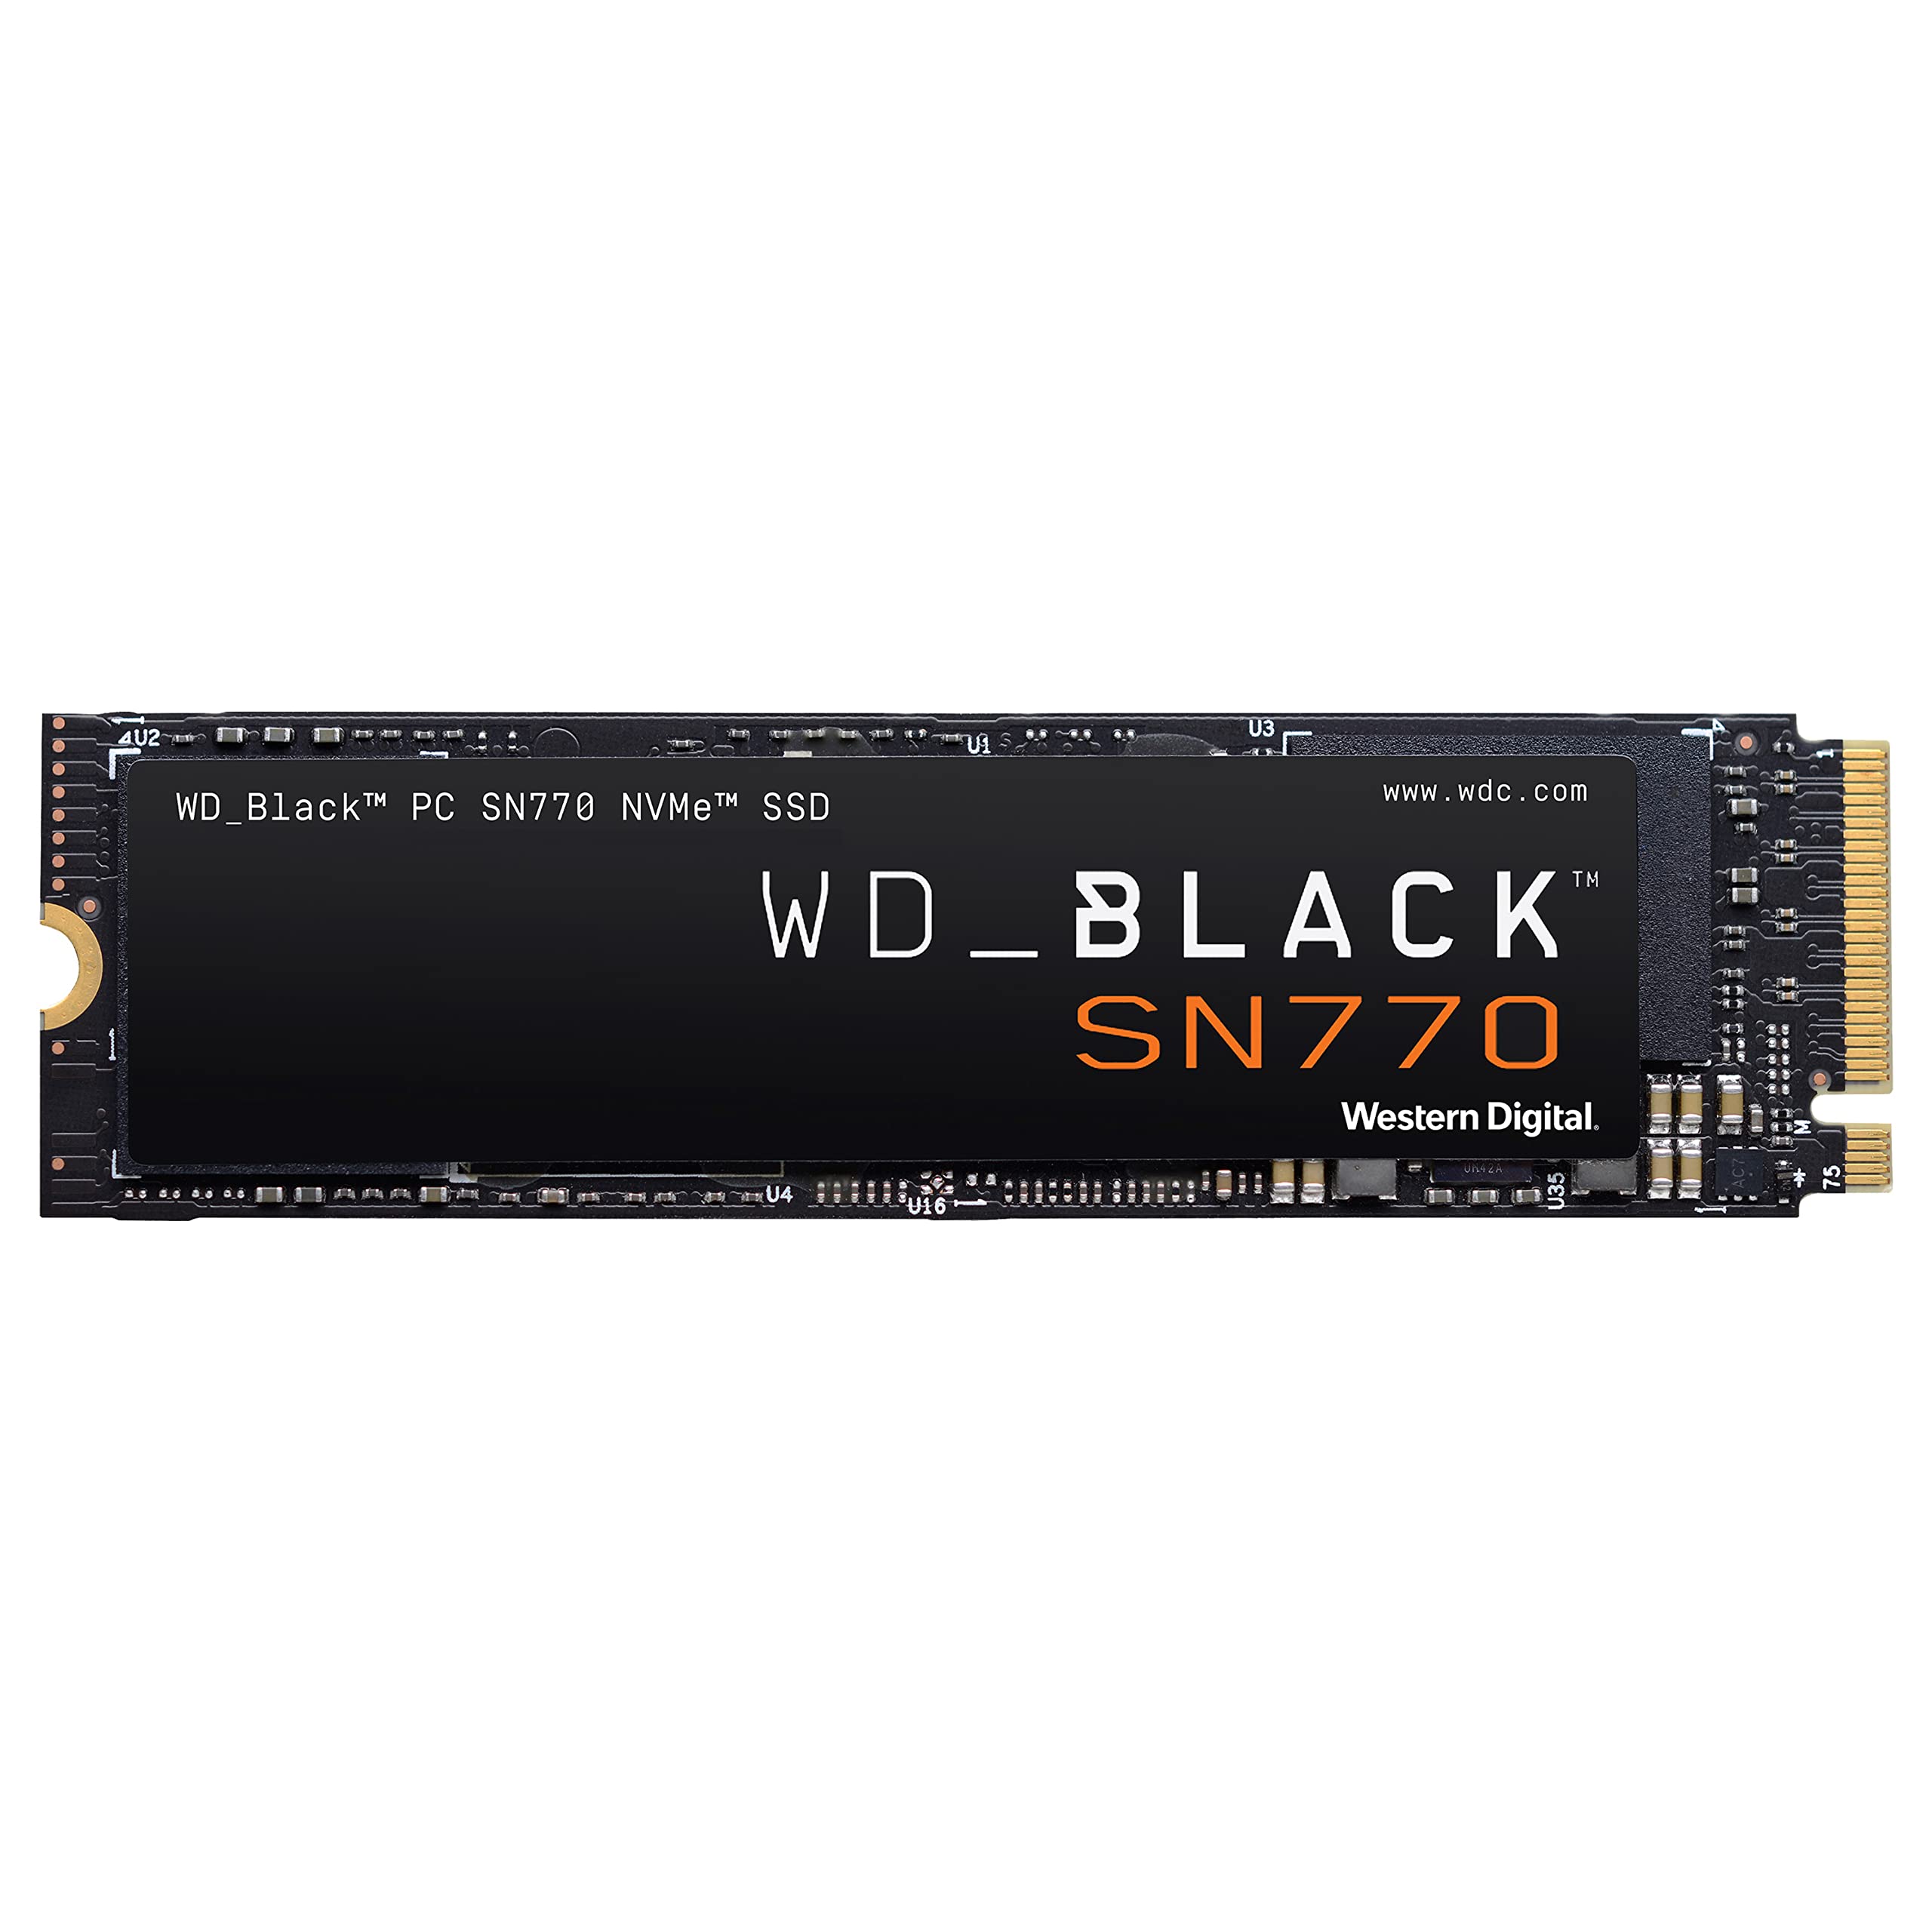 WD_BLACK 1TB SN770 NVMe SSD Gen4 PCIe, M.2 WDS100T3X0E $59.99